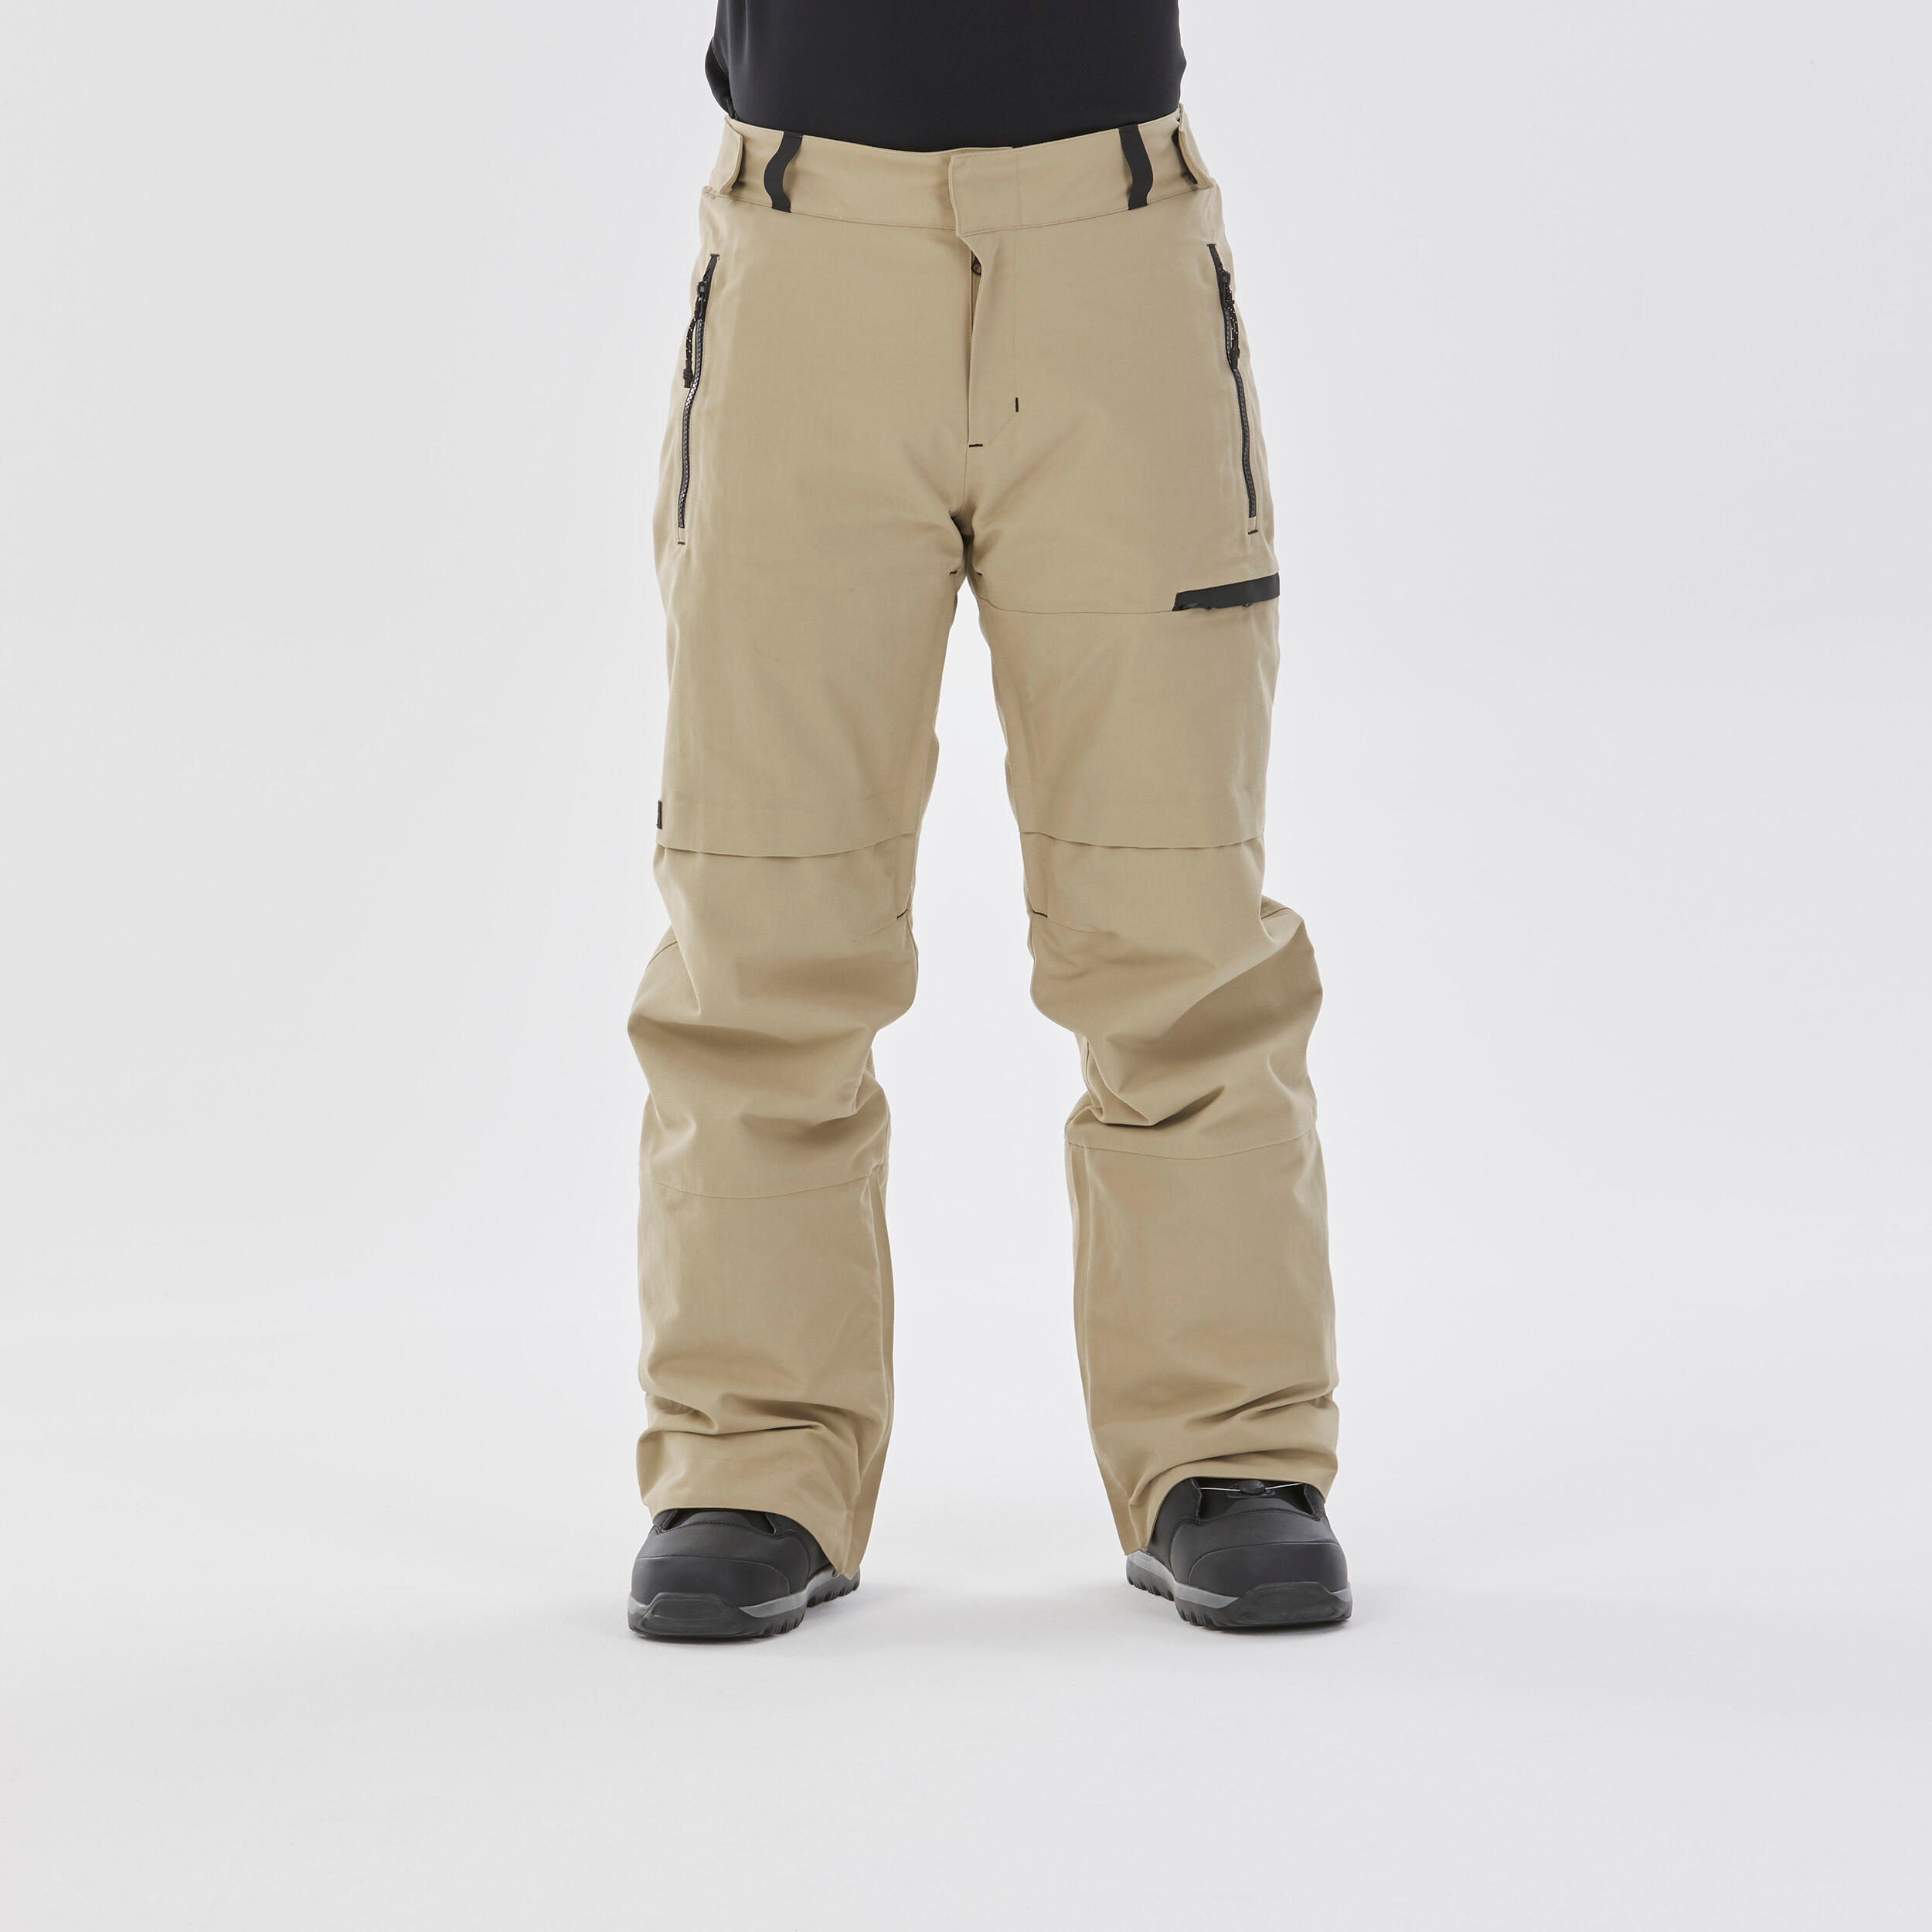 Ski/ snowboard pants (Decathlon), Men's Fashion, Activewear on Carousell